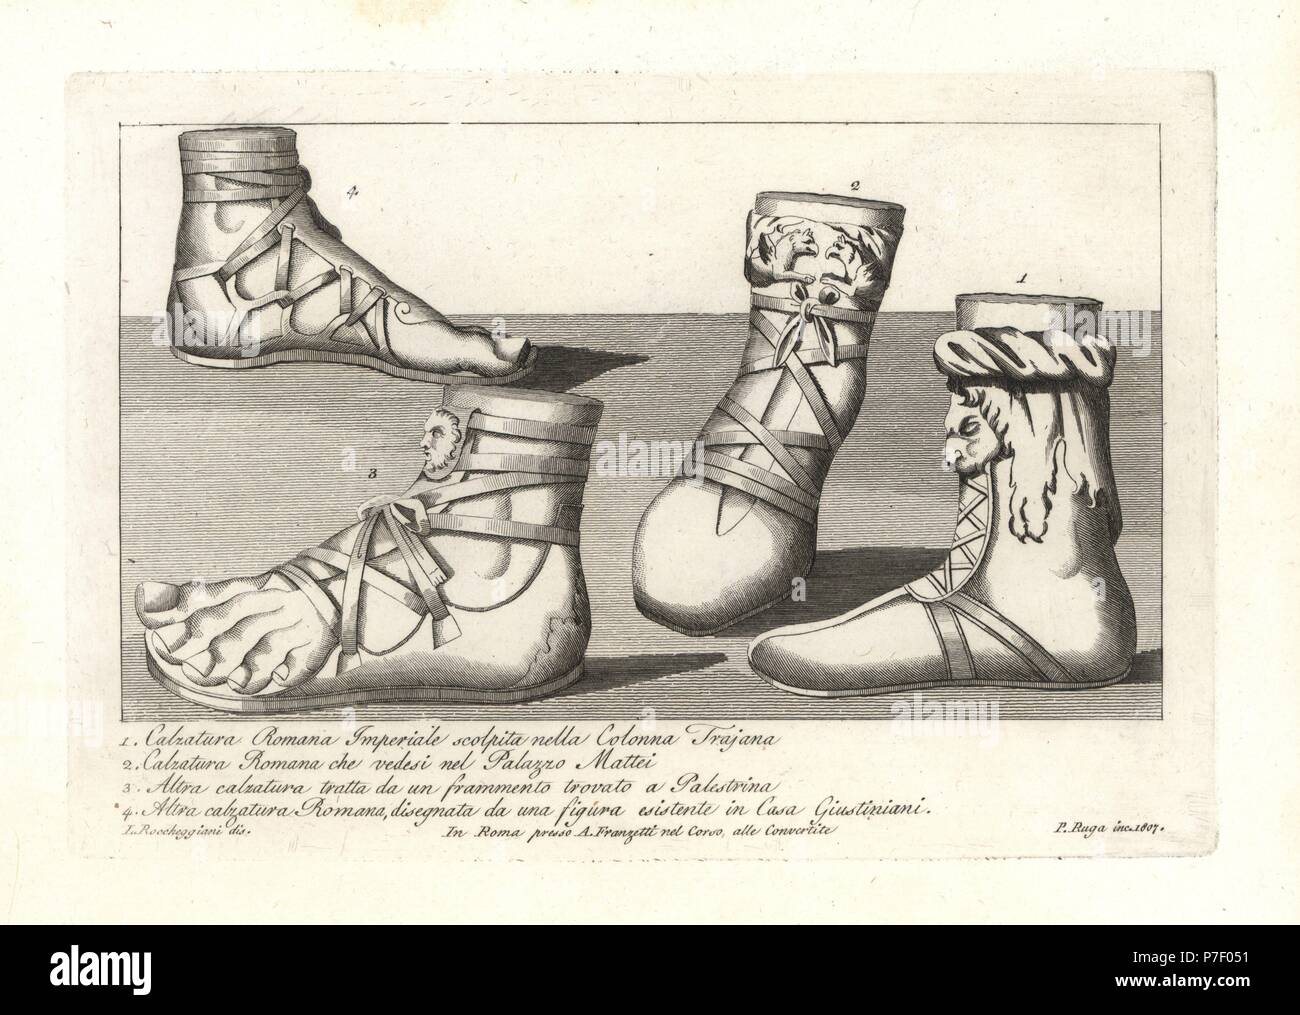 Les chaussures en provenance de l'Empire romain Trajan la colonne 1, Romain  en provenance de la Palazzo Mattei 2, sandale de un fragment trouvé à  Palestrina 3, et une sandale de Romain